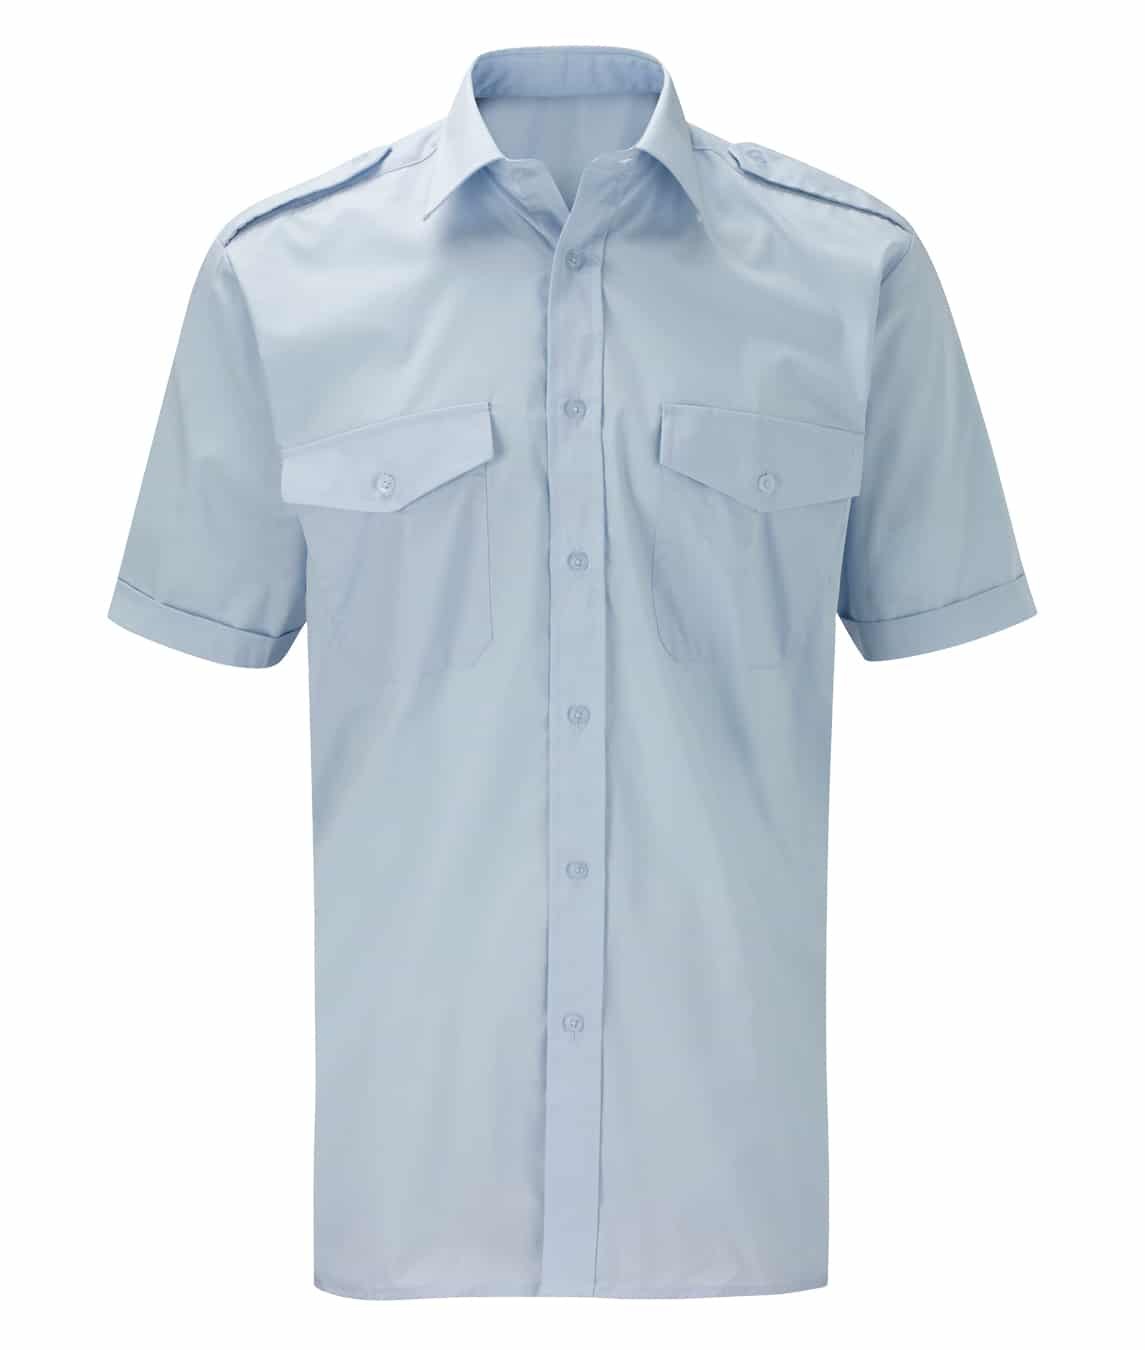 Pilot Shirt Men's: Short Sleeve - Industrial Workwear